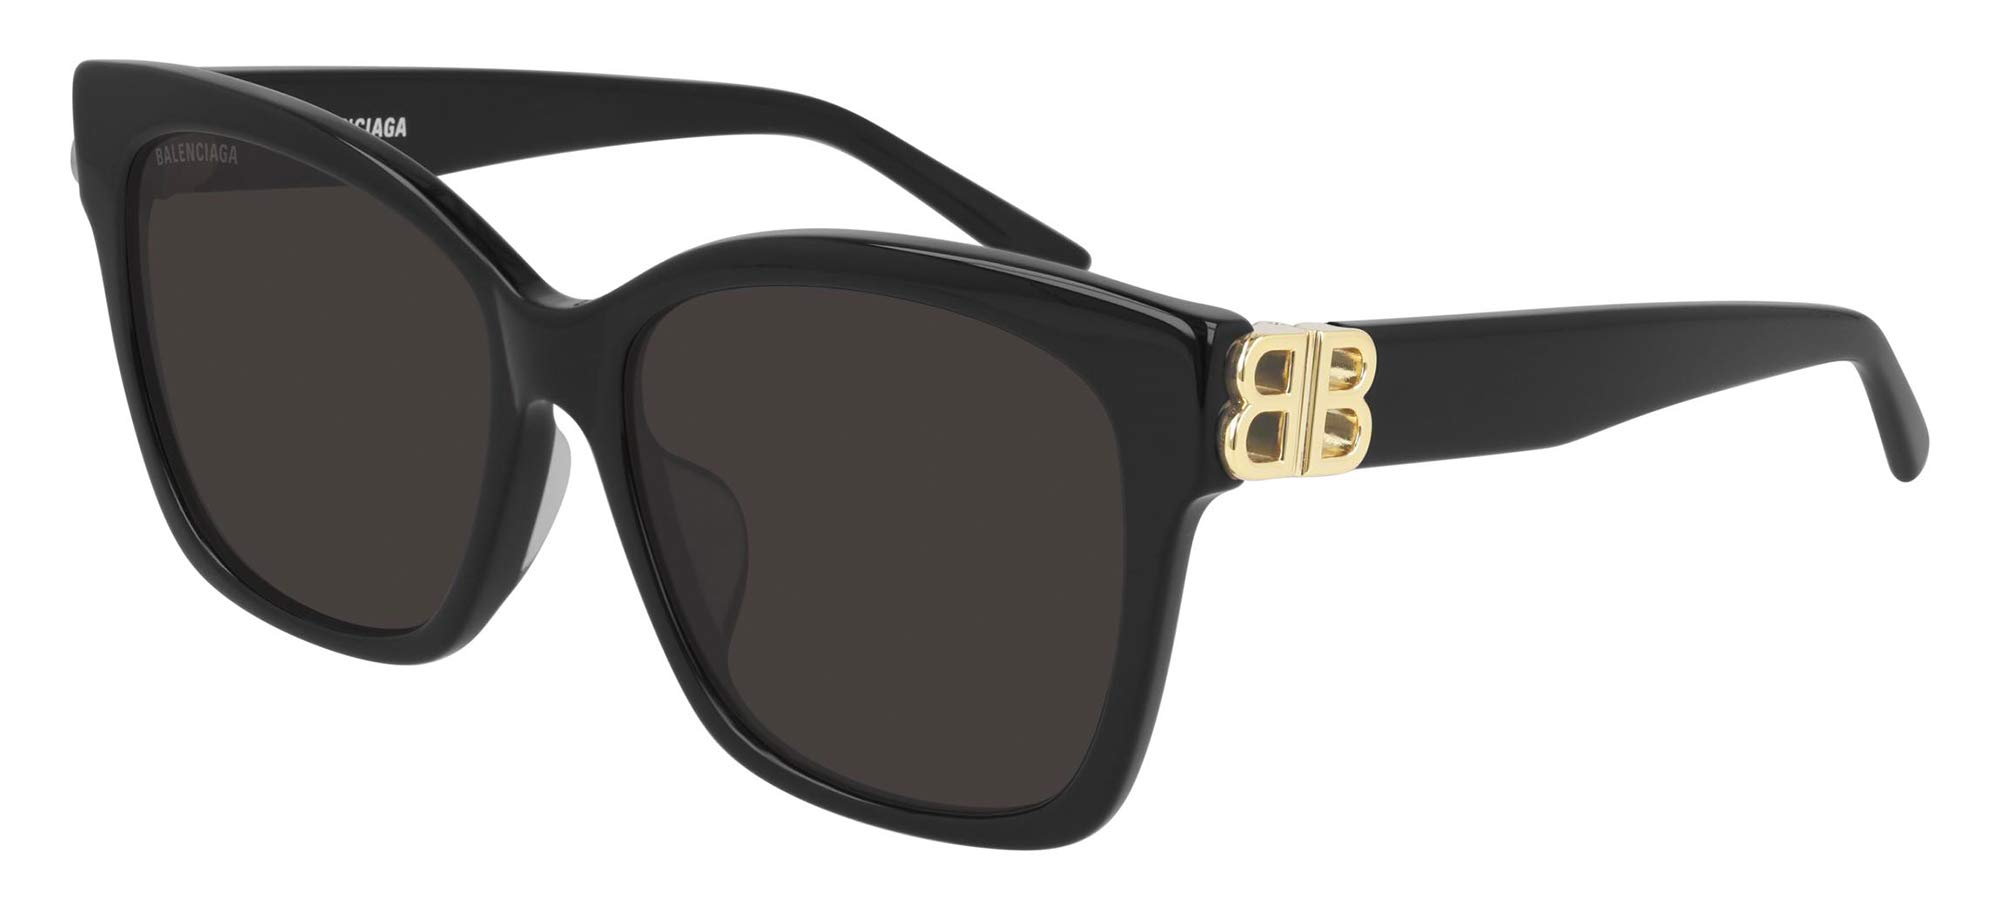 BALENCIAGA sunglasses for woman  Brown  Balenciaga sunglasses BB0096S  online on GIGLIOCOM